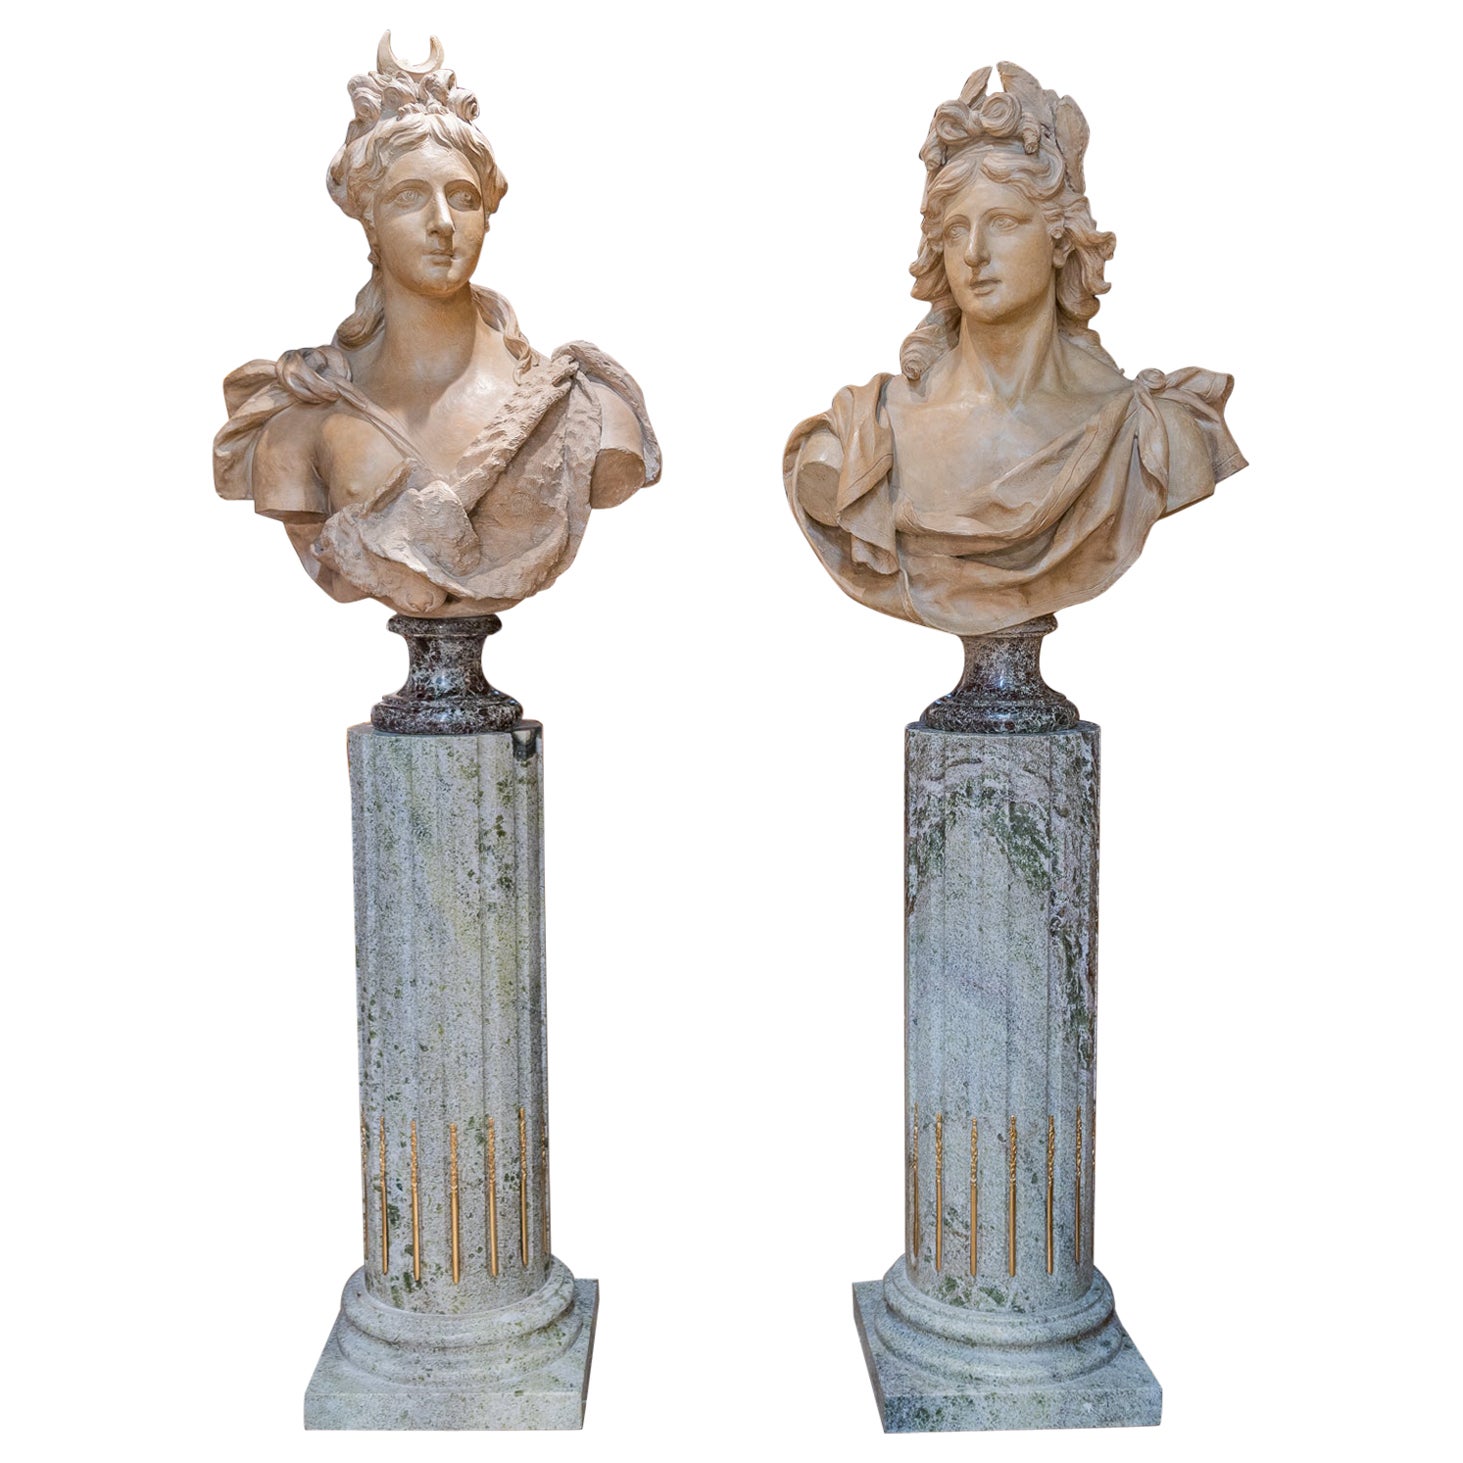 Prächtiges Paar großer Terrakotta-Büsten von Apollo und Diana aus dem späten 18. Jahrhundert